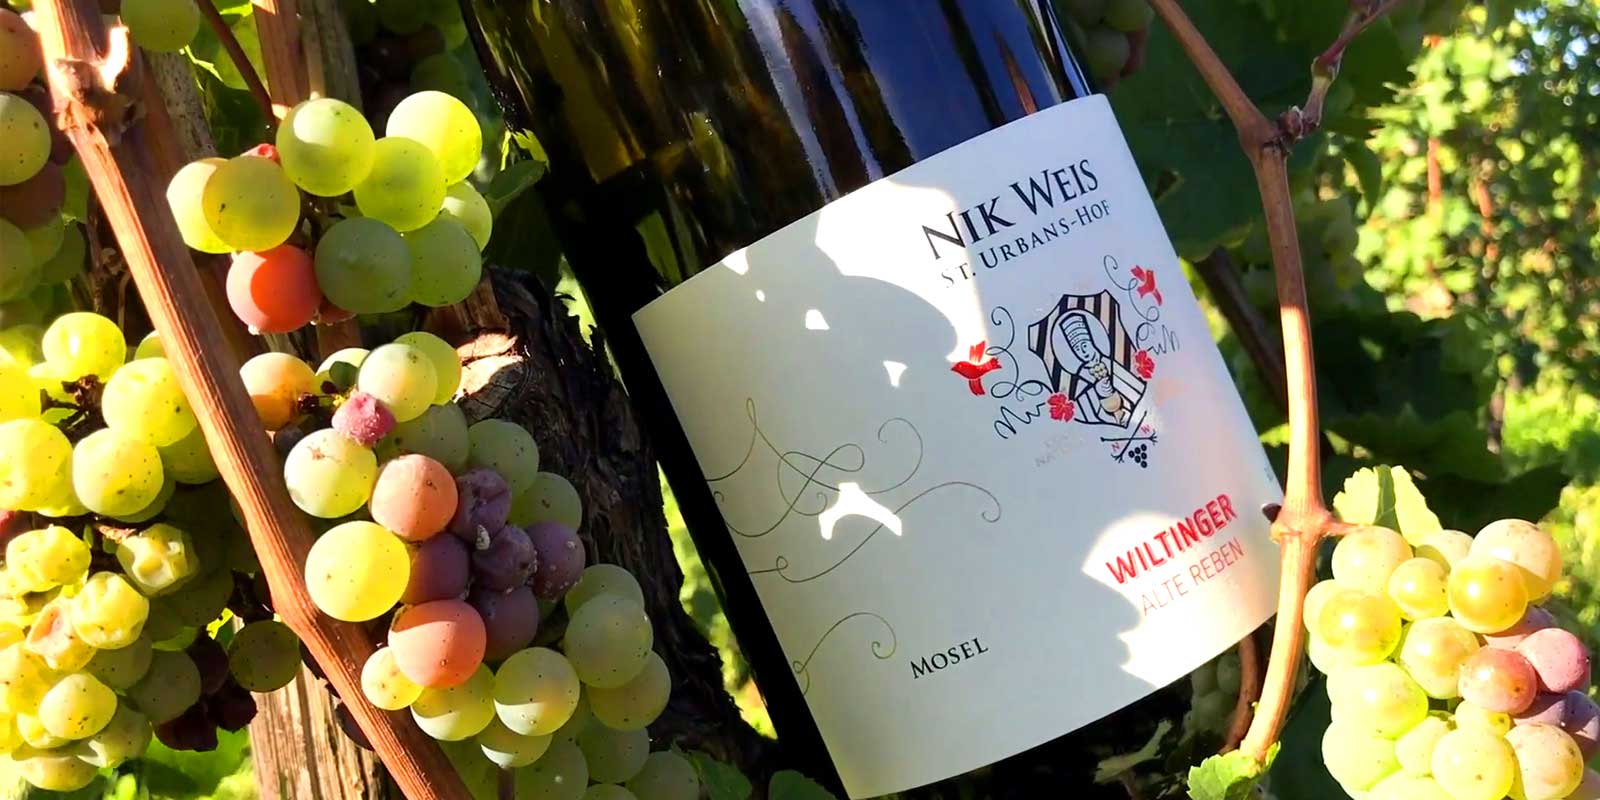 Kilang wain Sankt Urbans-Hof - Moselle Kilang wain St. Urbans-Hof telah diasaskan pada tahun 1947 oleh Nicolaus Weis. Cucunya Nik Weis kini merupakan generasi ketiga yang menjalankan kilang wain itu.